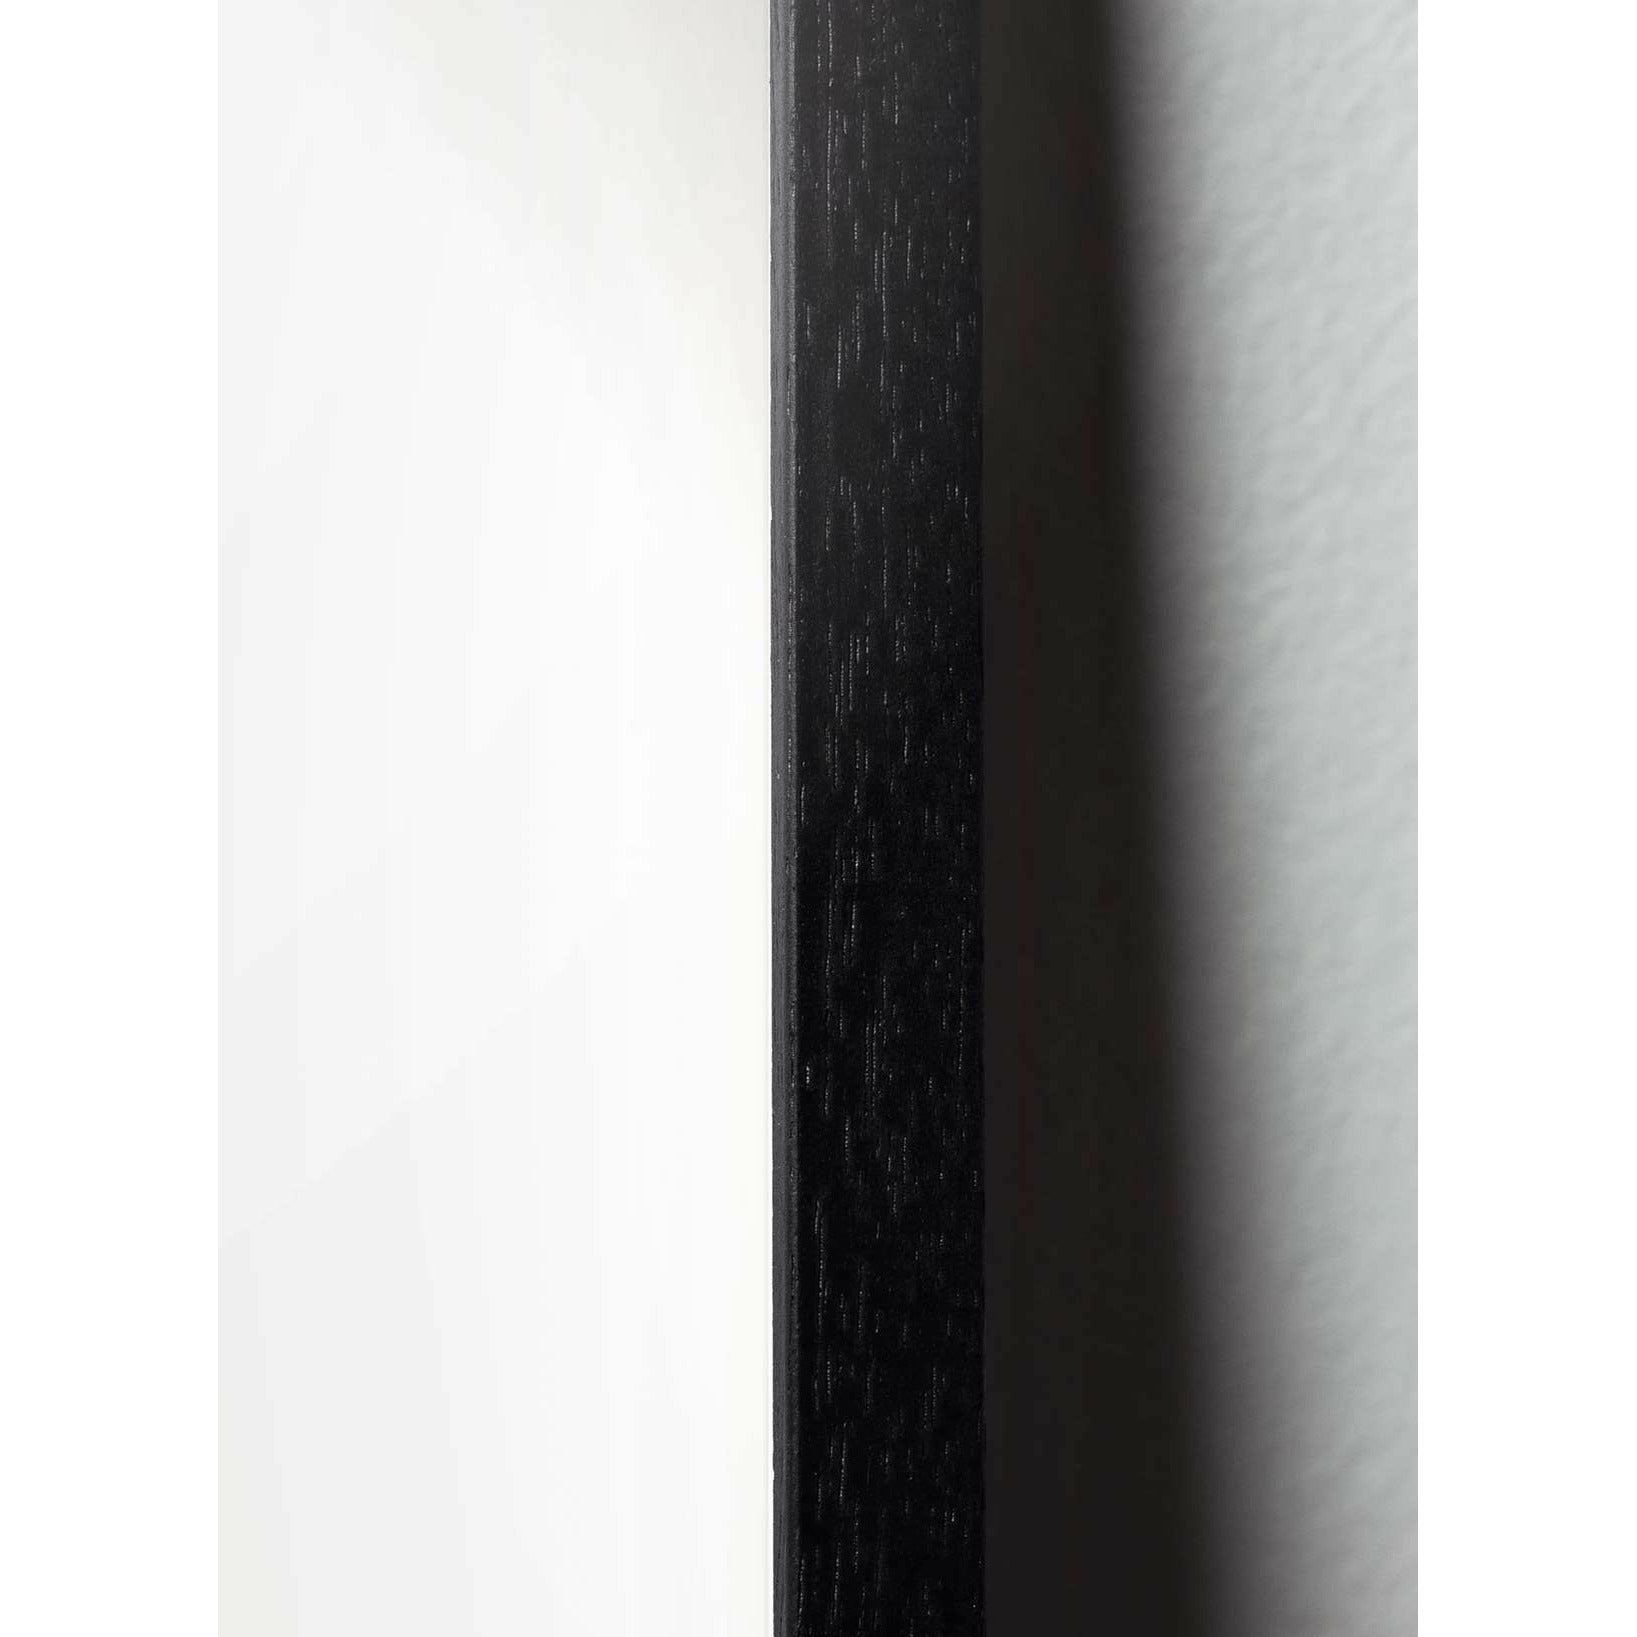 Plakát linie medvída, rám v černém lakovaném dřevu 70x100 cm, bílé pozadí